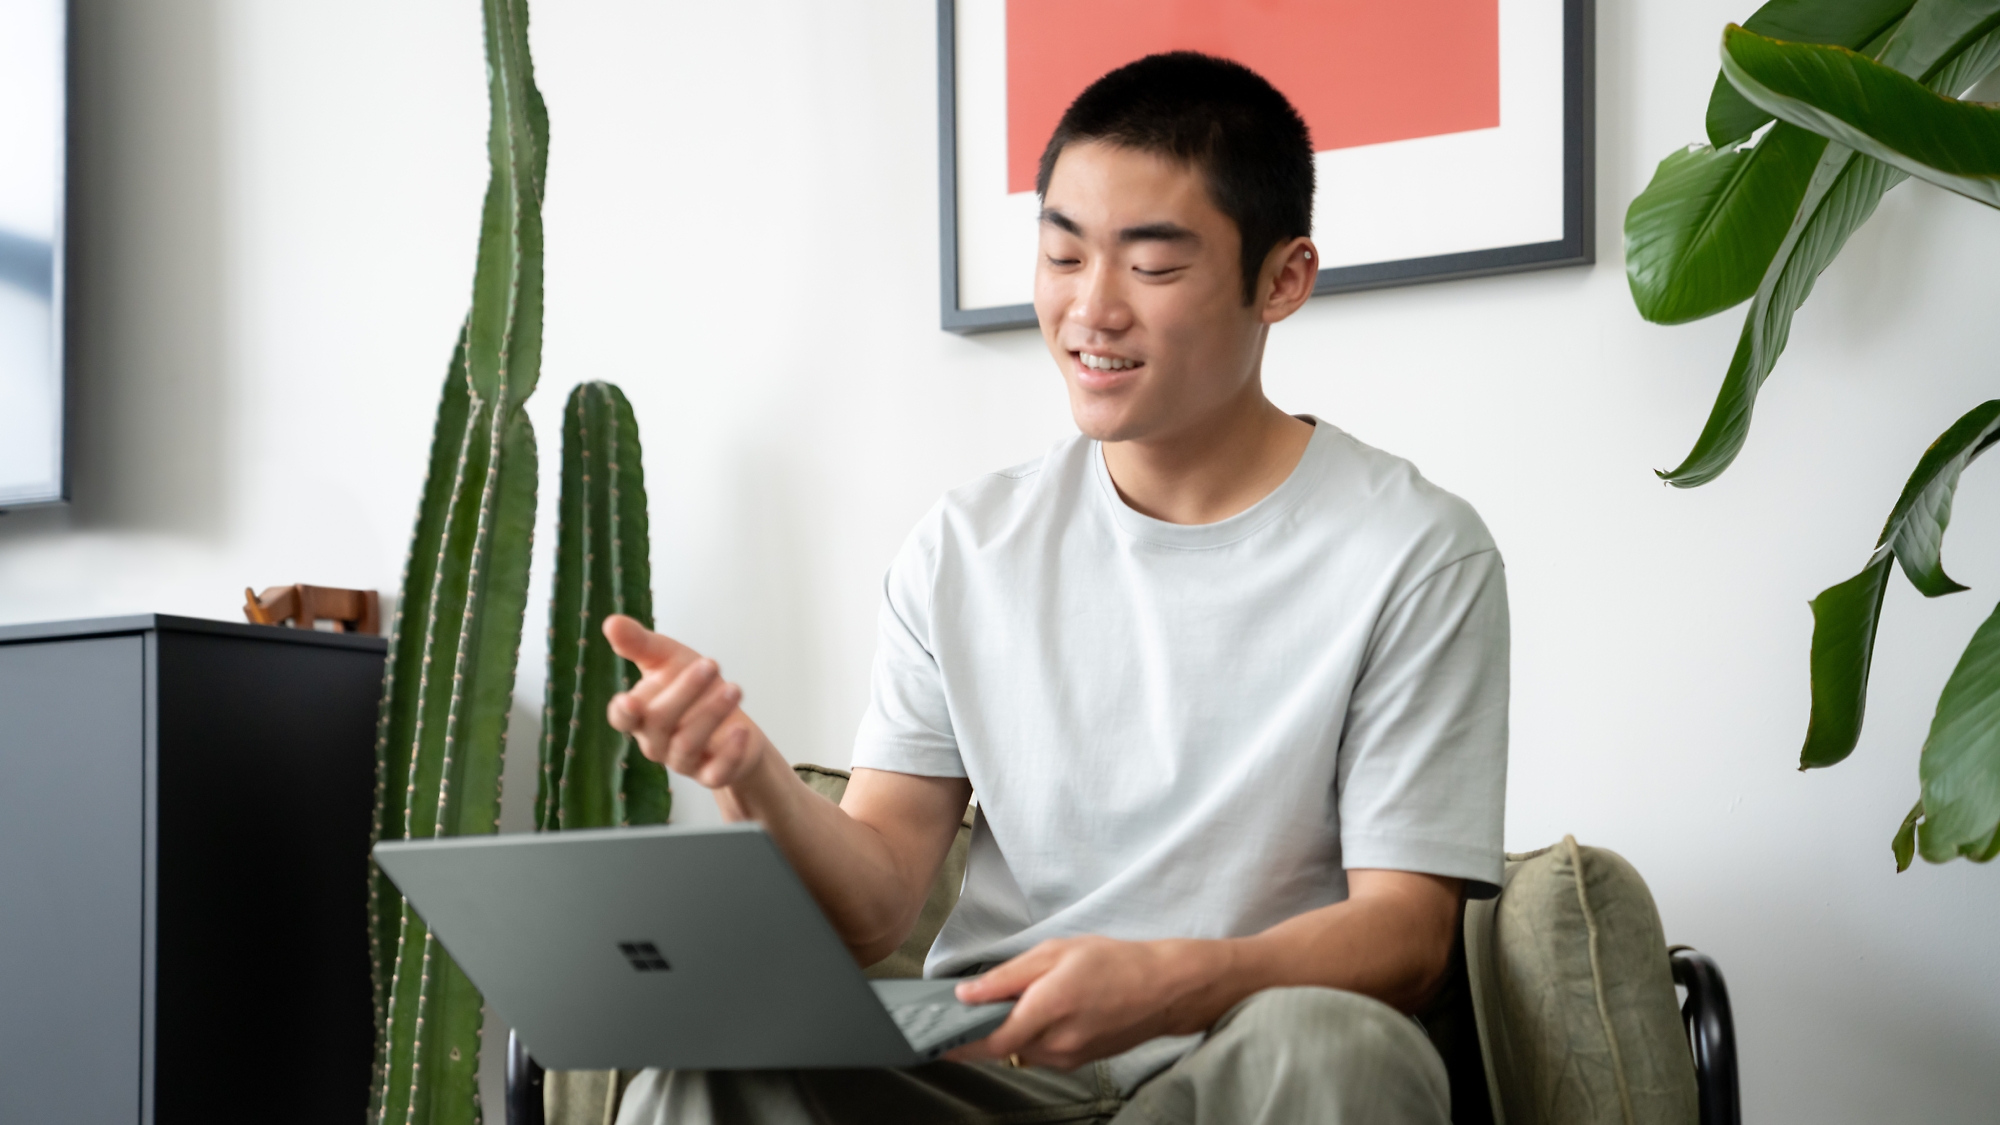 Νεαρός άνδρας που χρησιμοποιεί ευτυχώς έναν φορητό υπολογιστή σε ένα σύγχρονο δωμάτιο με φυτά εσωτερικού χώρου.